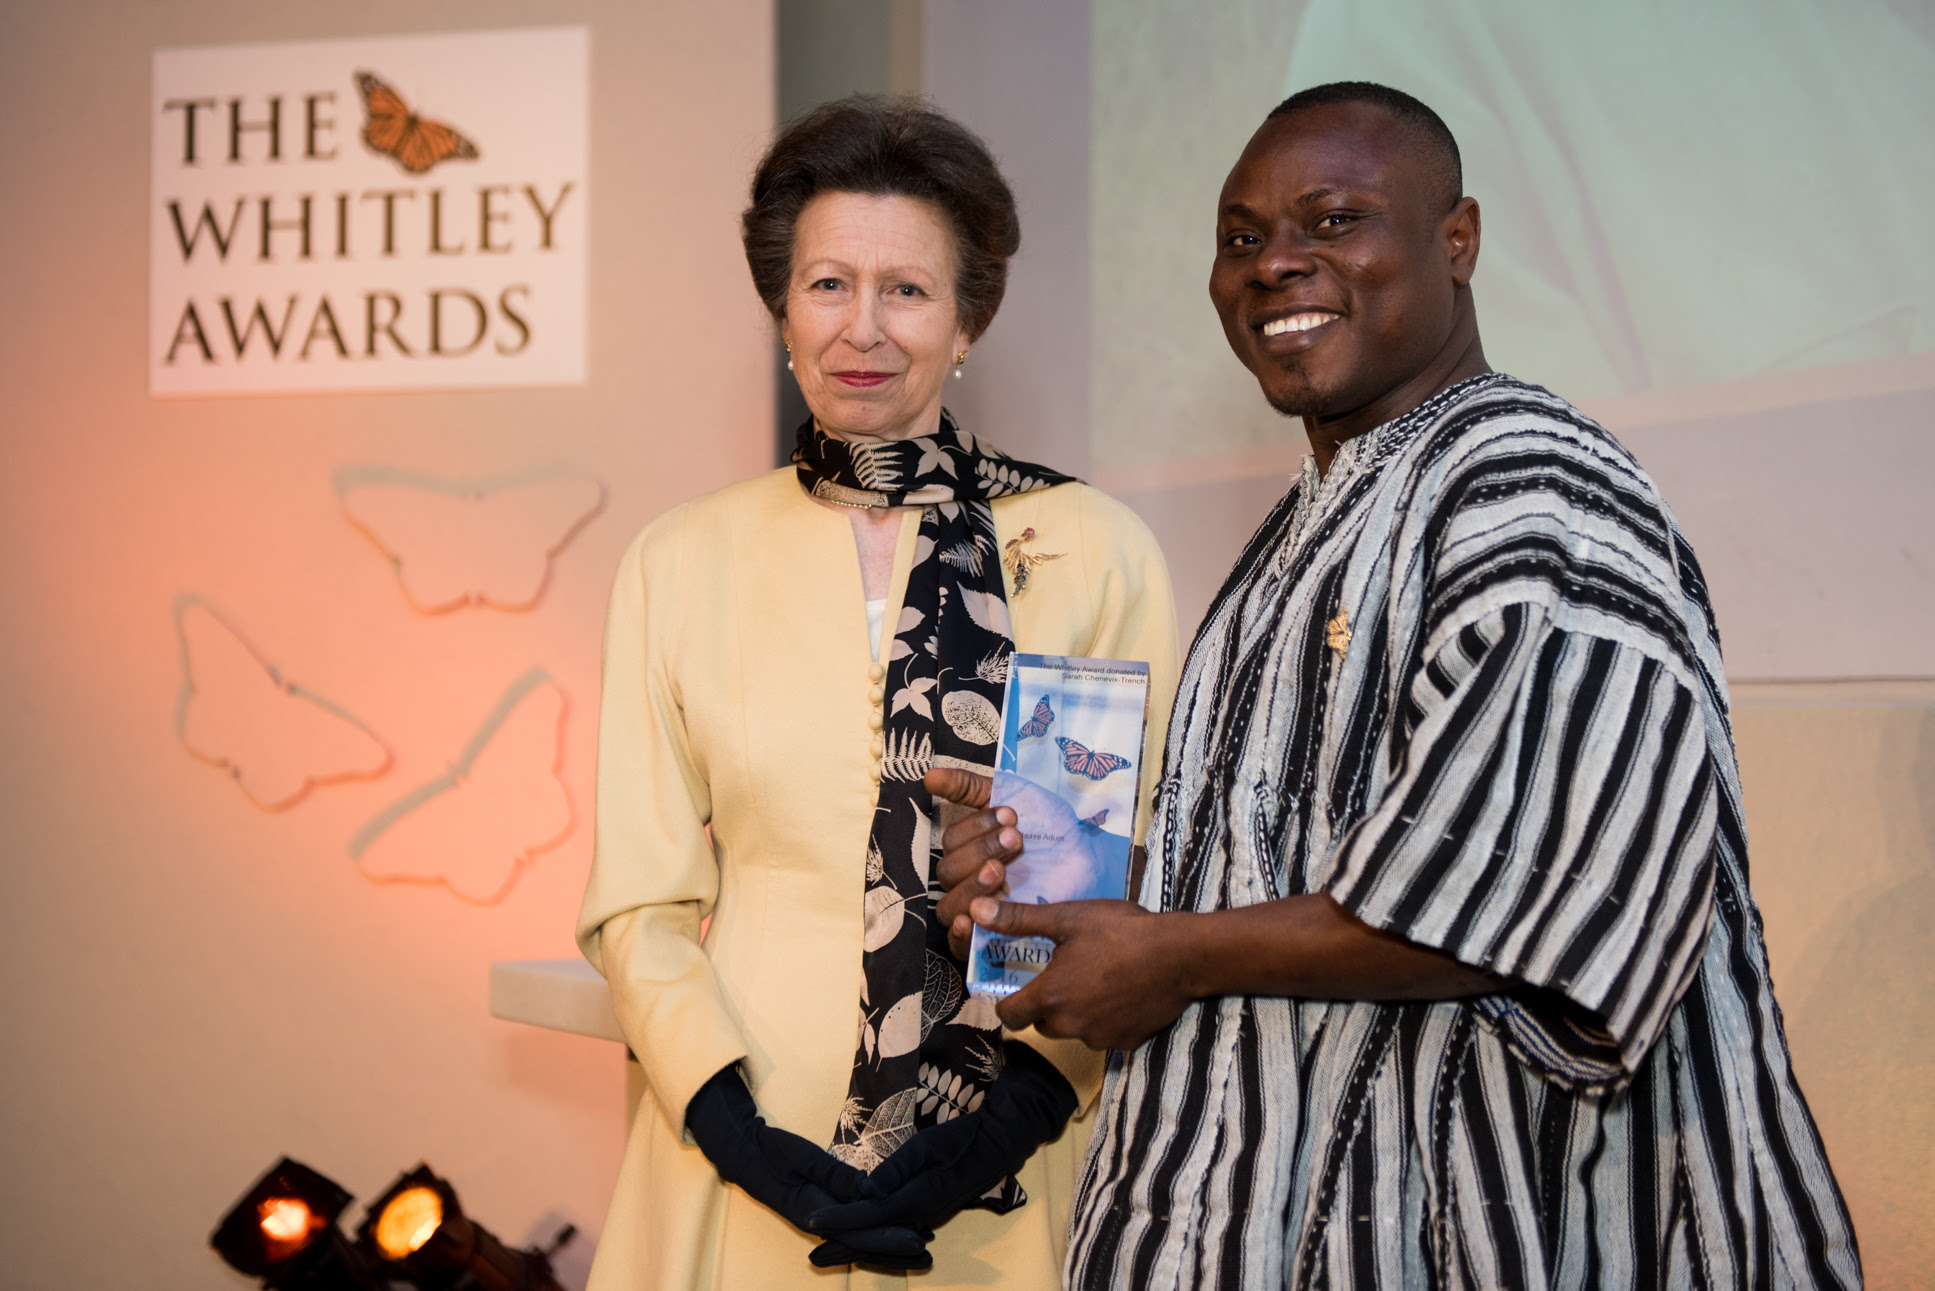 Ghana gilbert whitley award